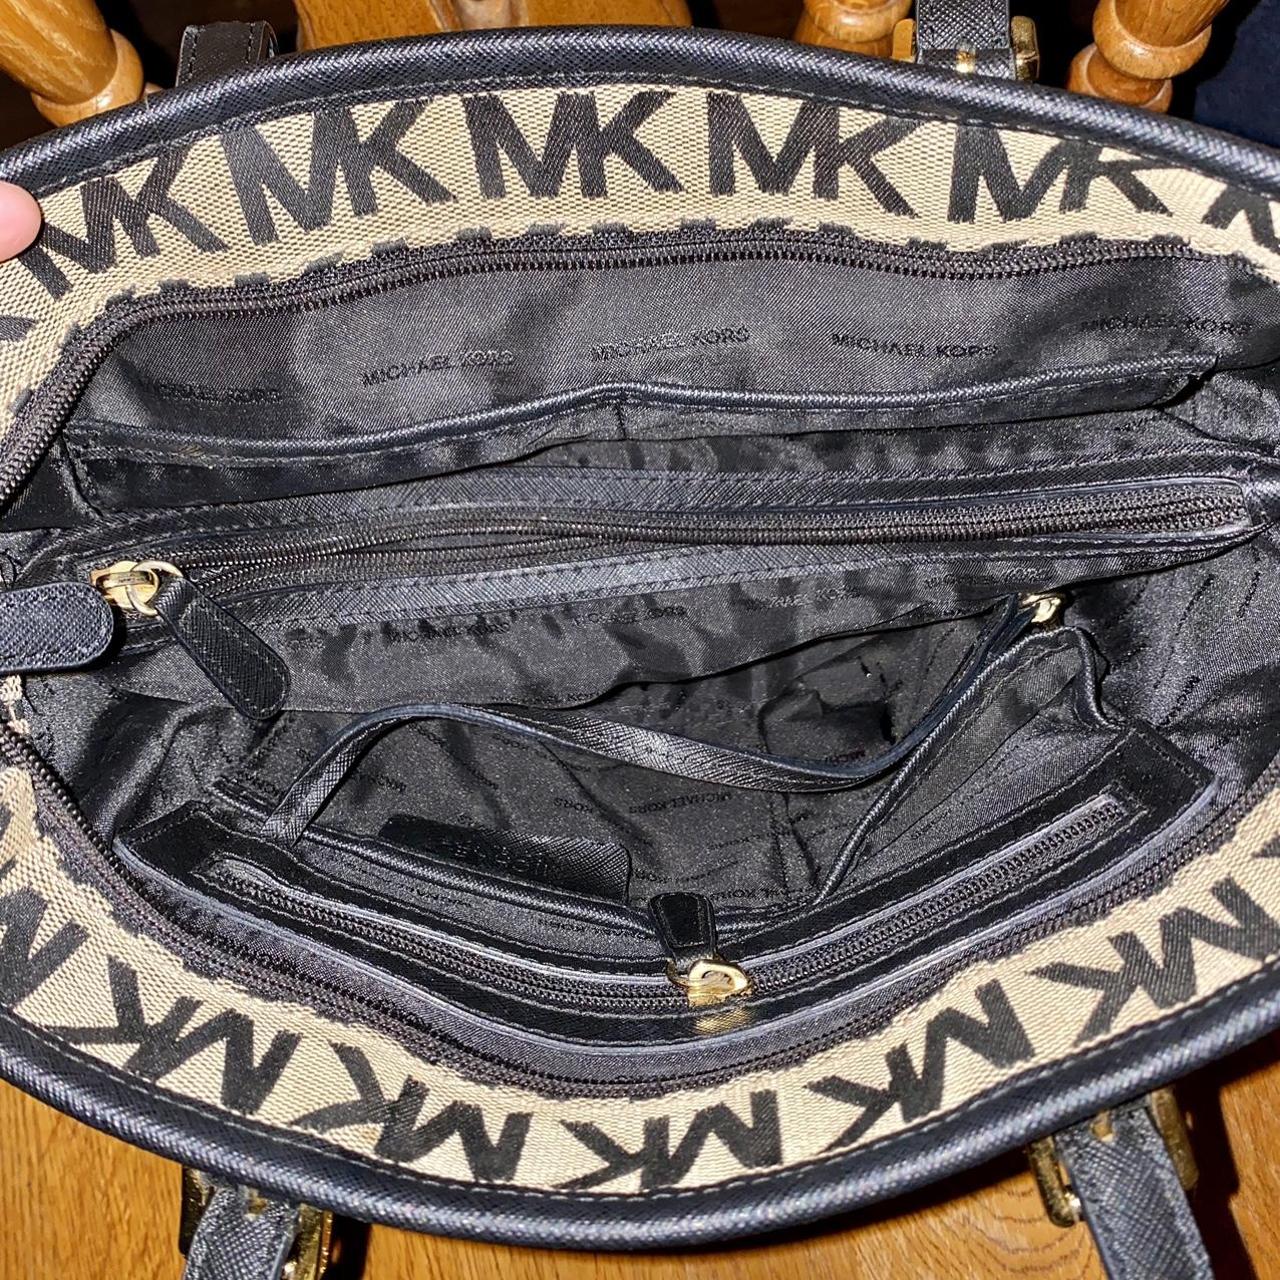 Michael Kors monogram tote bag black and tan. black - Depop